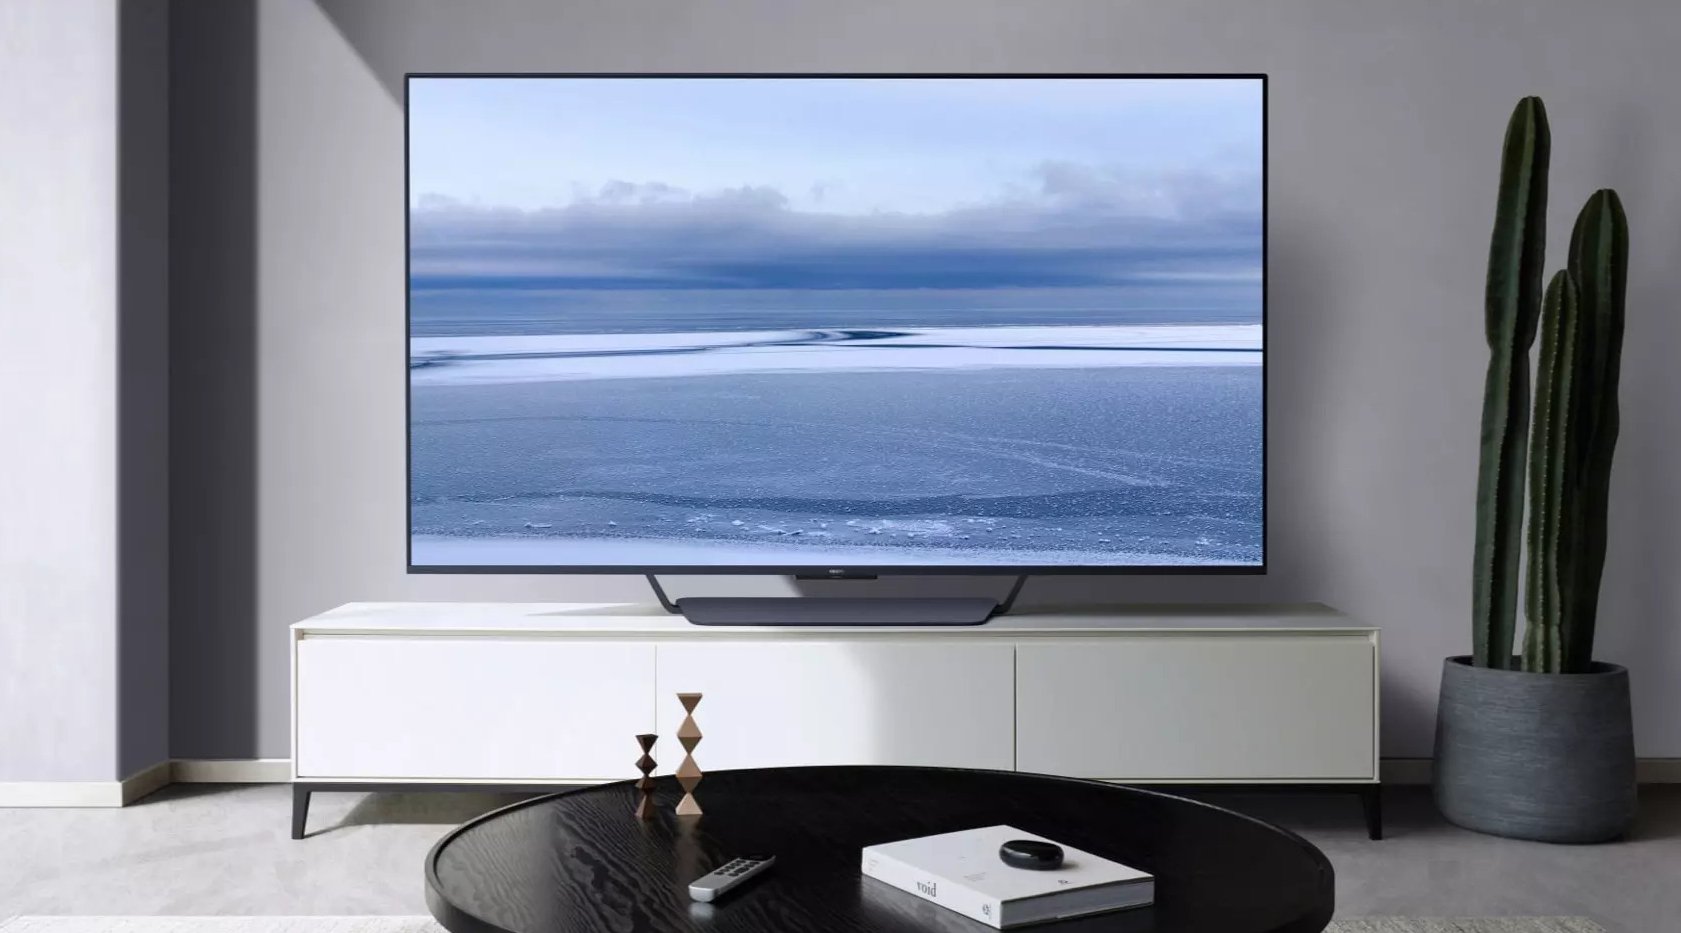 OPPO lançou seus primeiros televisores: OPPO TV S1 e OPPO TV R1